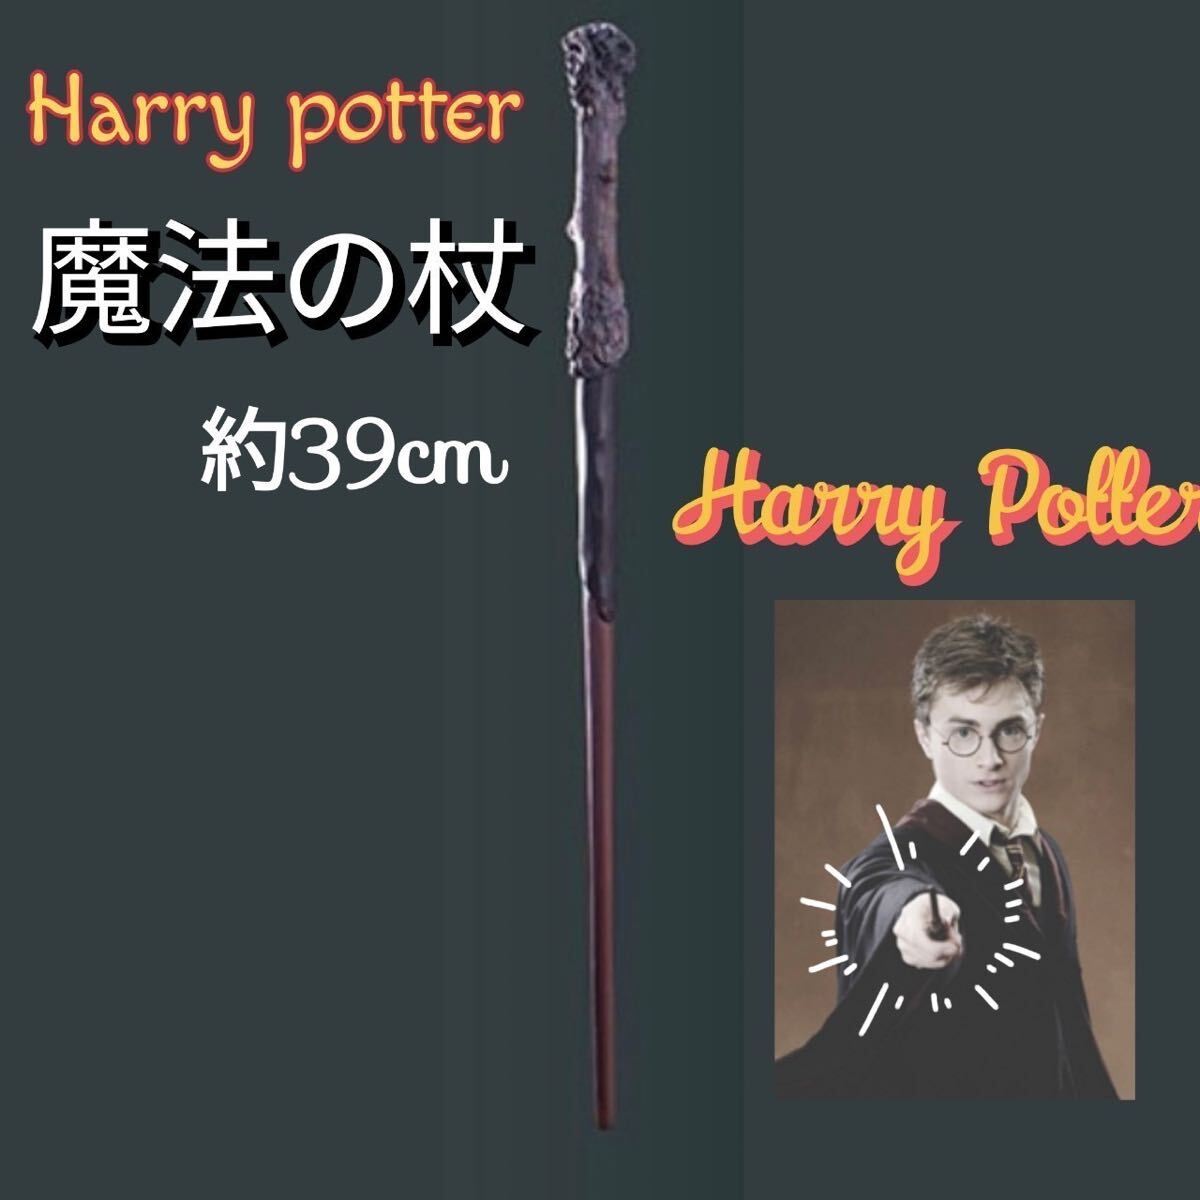 ハリーポッター 魔法の杖 ハリーポッター ハーマイオニー スネイプ _画像1